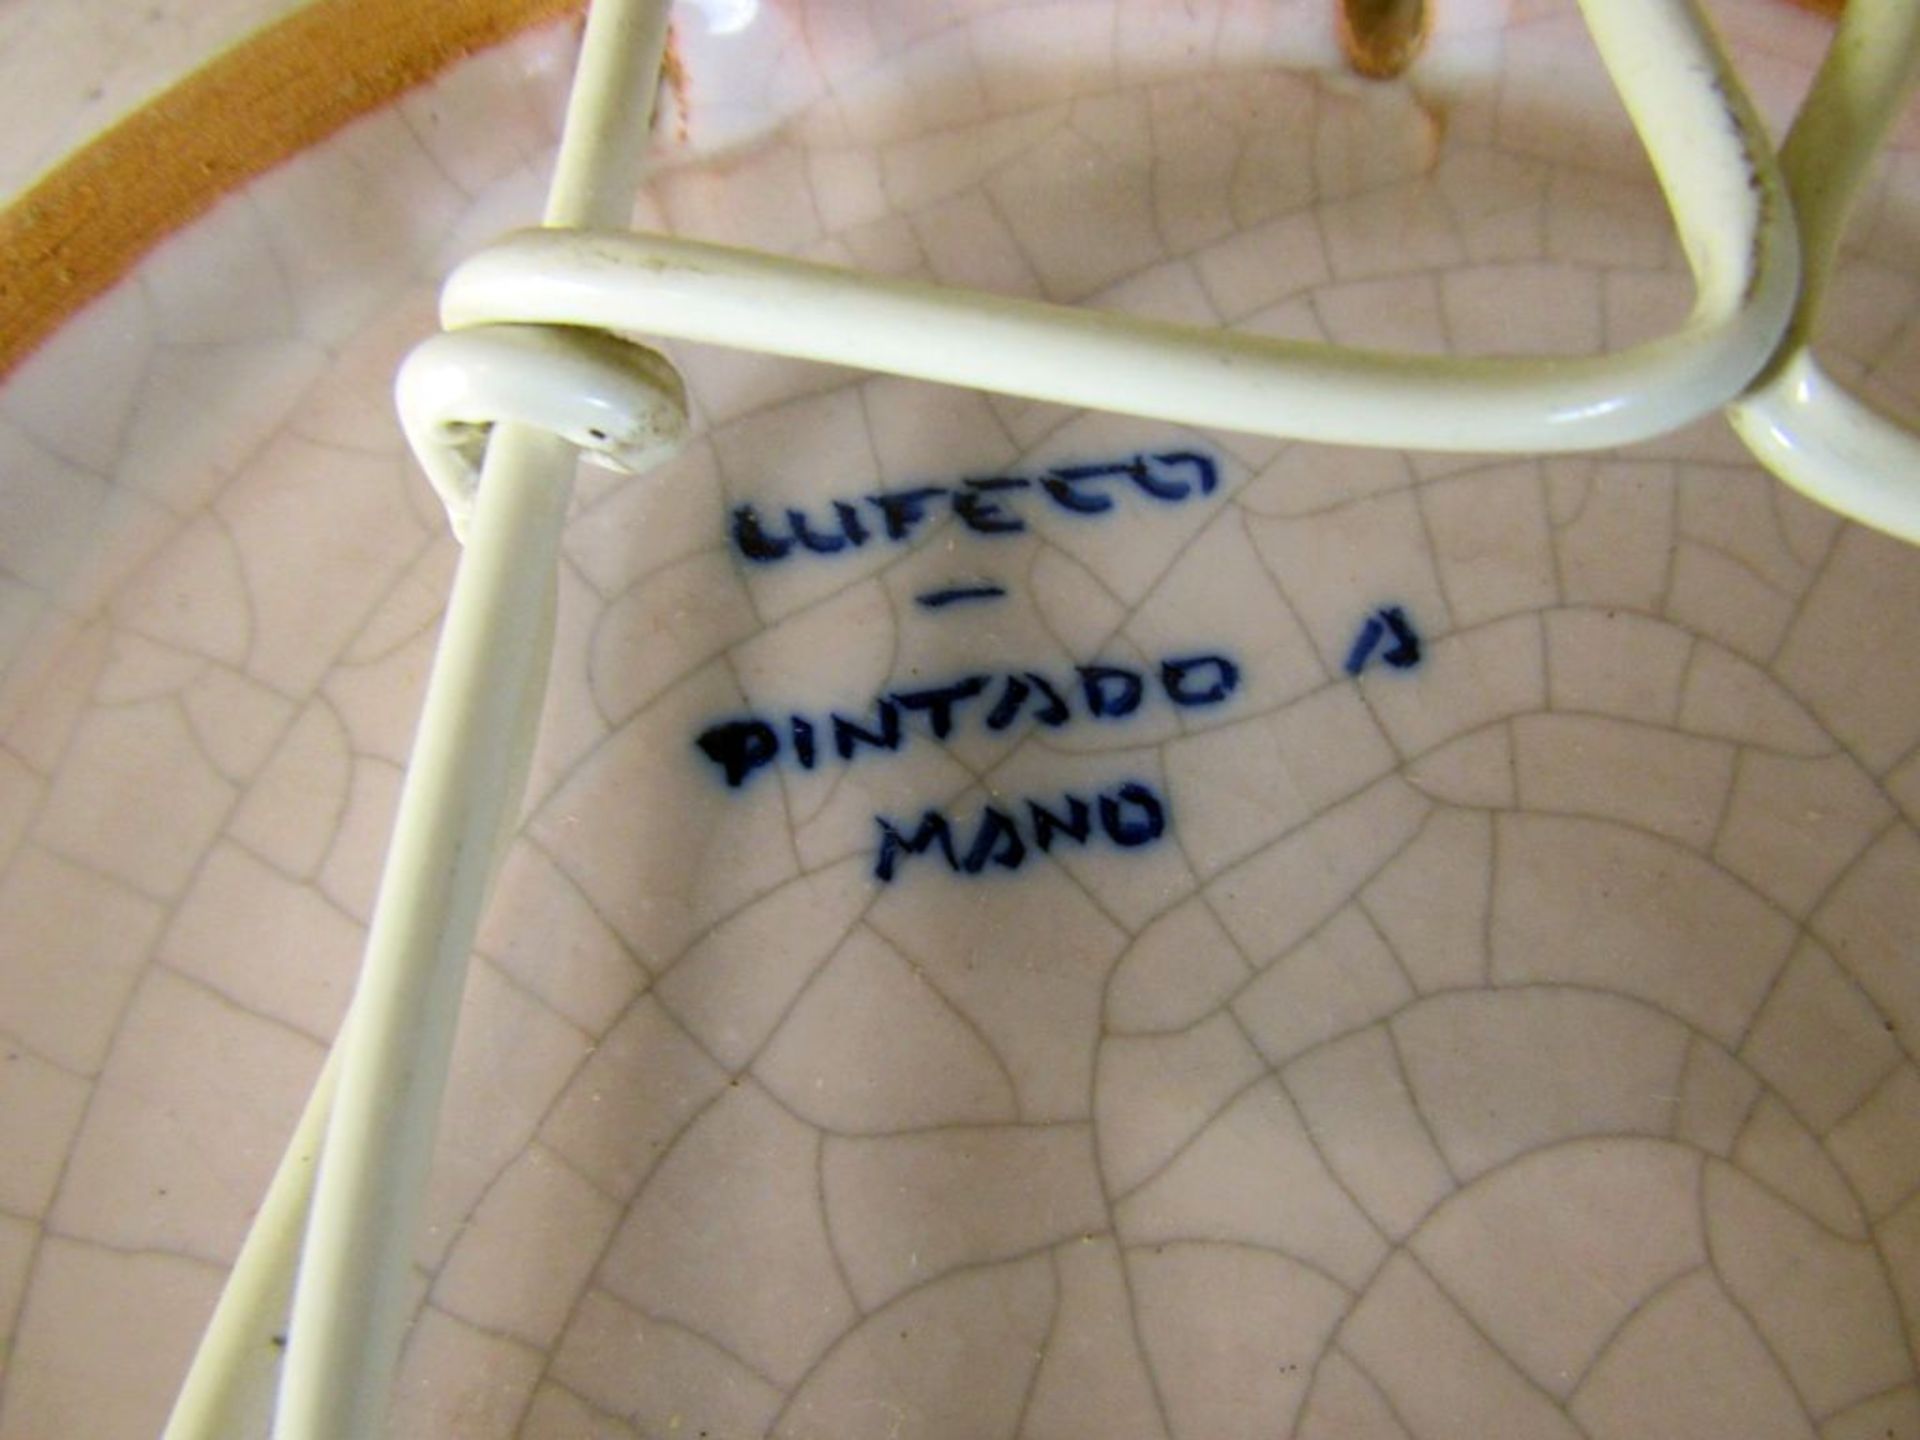 Wandteller Pintago Mano 30cm - Bild 6 aus 6